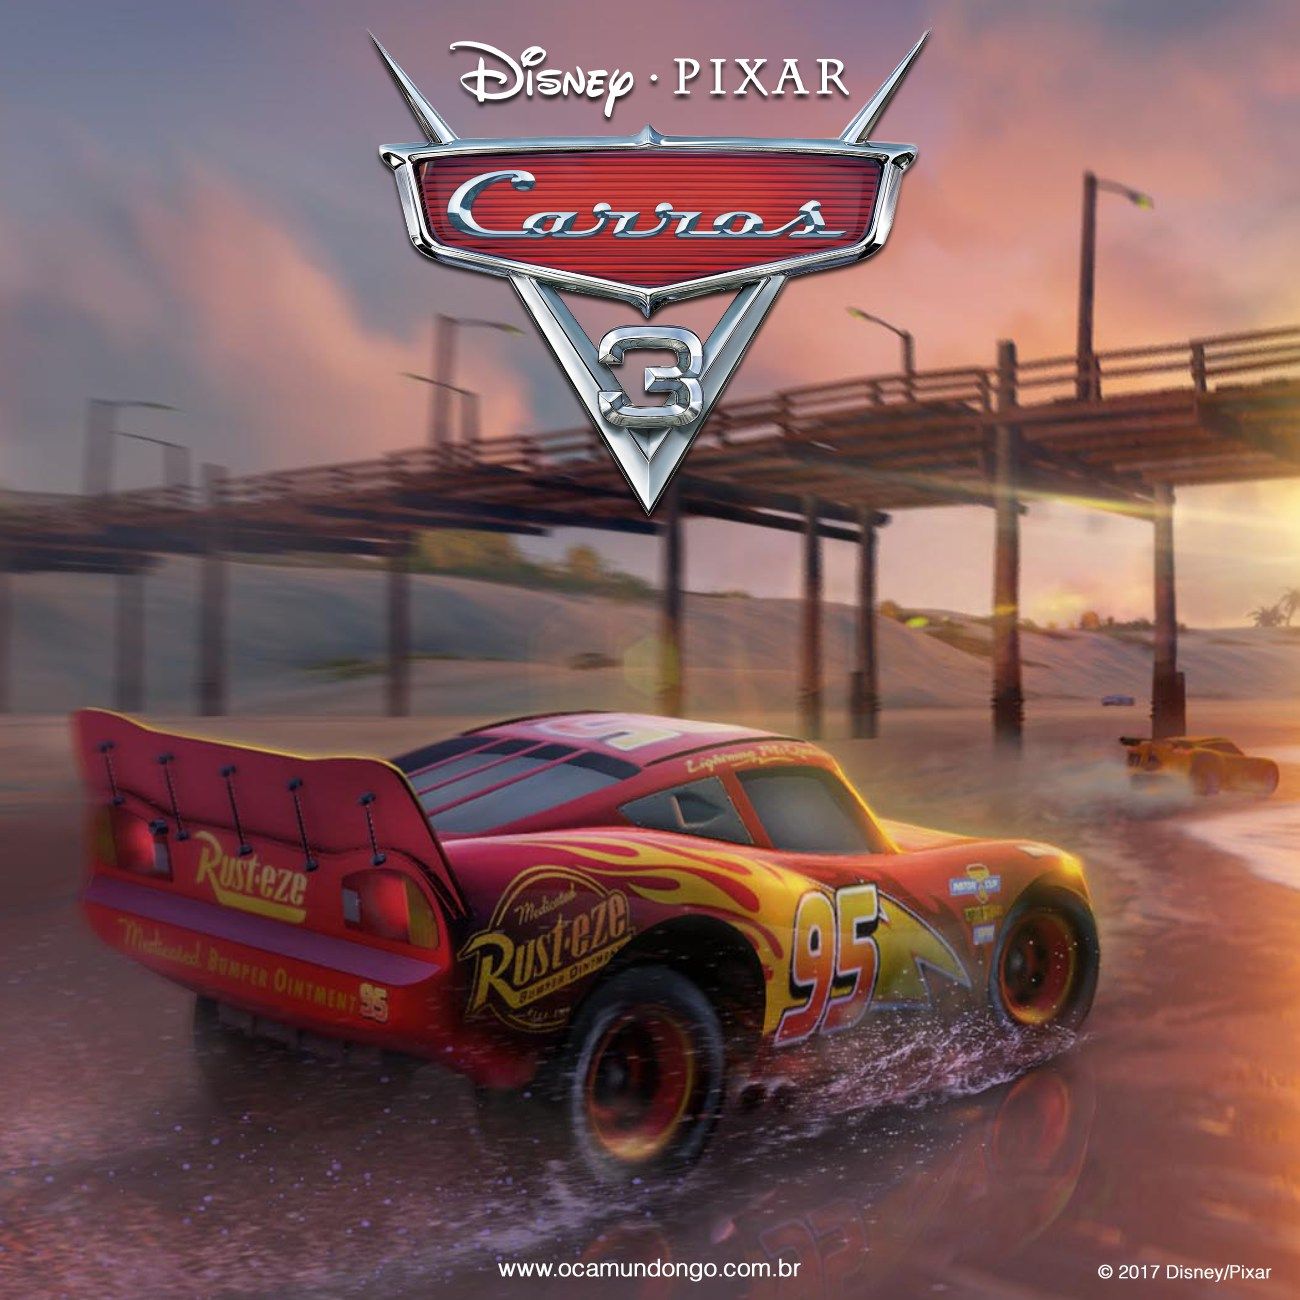 Carros 3  Game inspirado no filme é lançado no Brasil